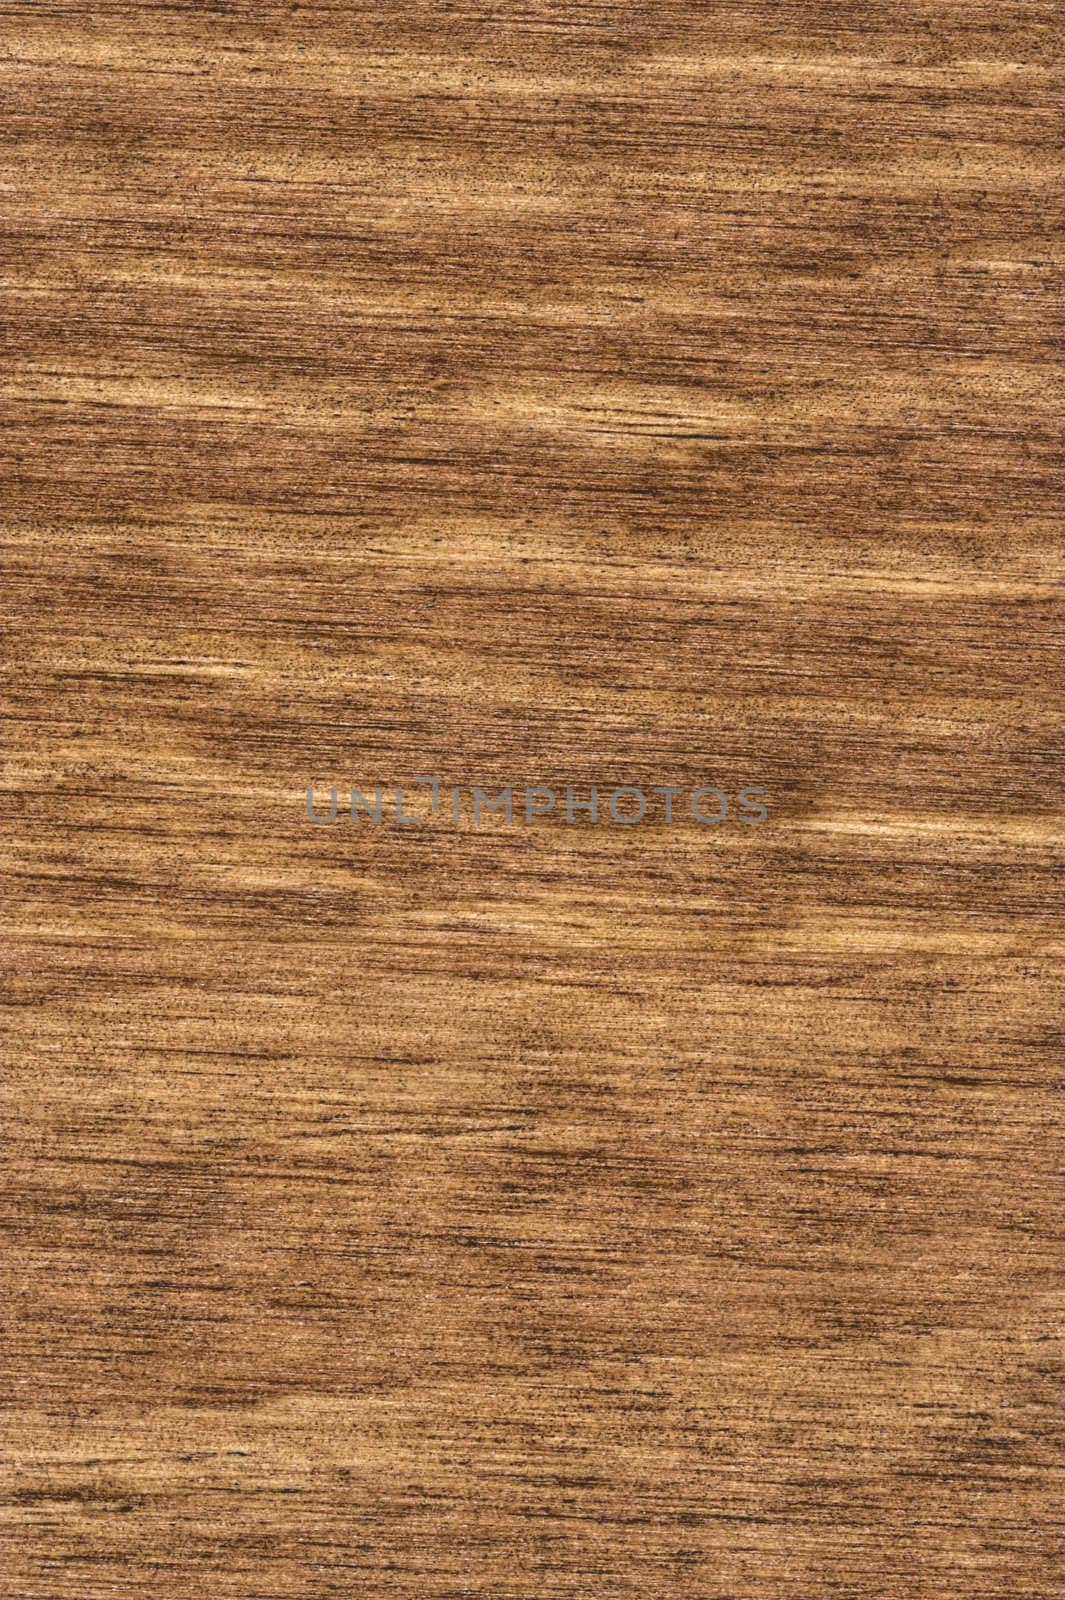 Wood Grain 3 by sbonk